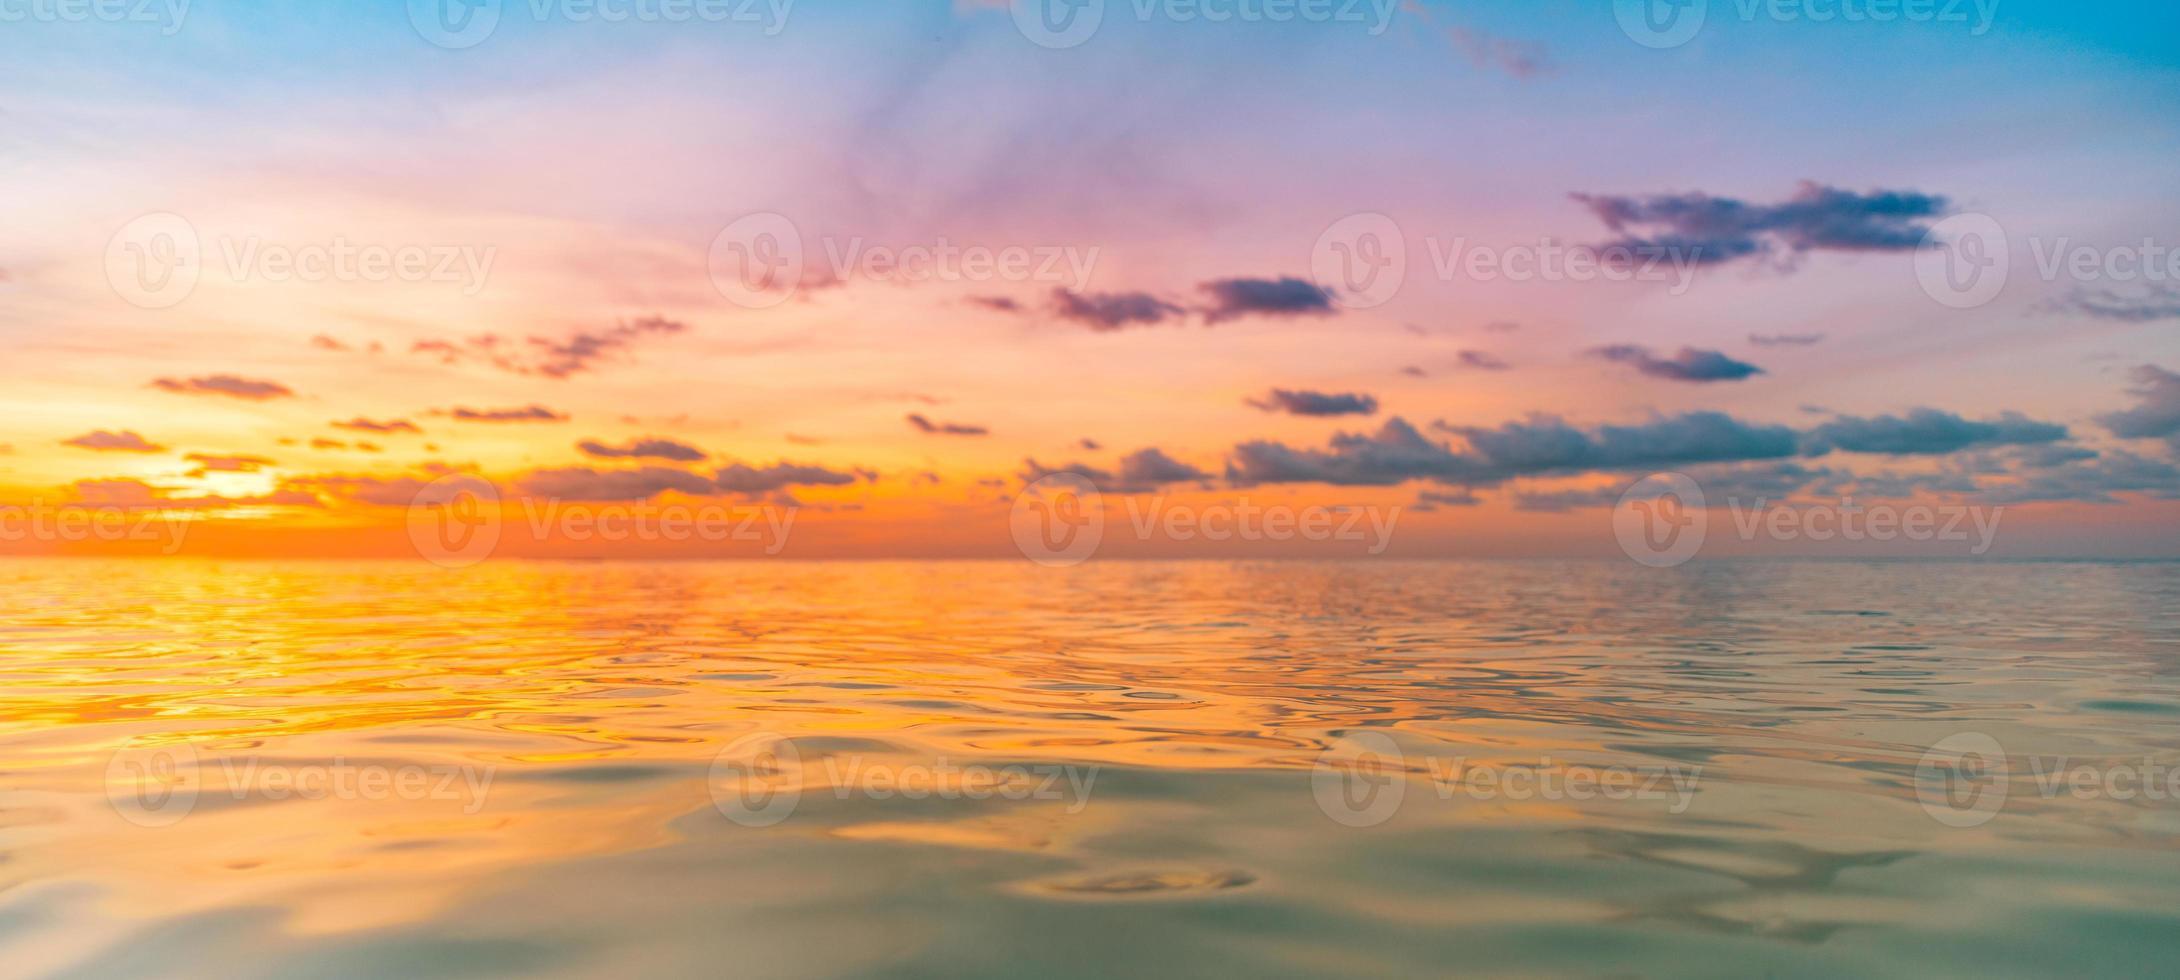 Sonnenuntergang Meer Meereslandschaft. bunter ozeanstrand sonnenaufgang. wunderschöne Strandlandschaft mit ruhigen Wellen und weichem Sandstrand. leere tropische landschaft, horizont mit malerischem küstenblick. bunter naturseehimmel foto